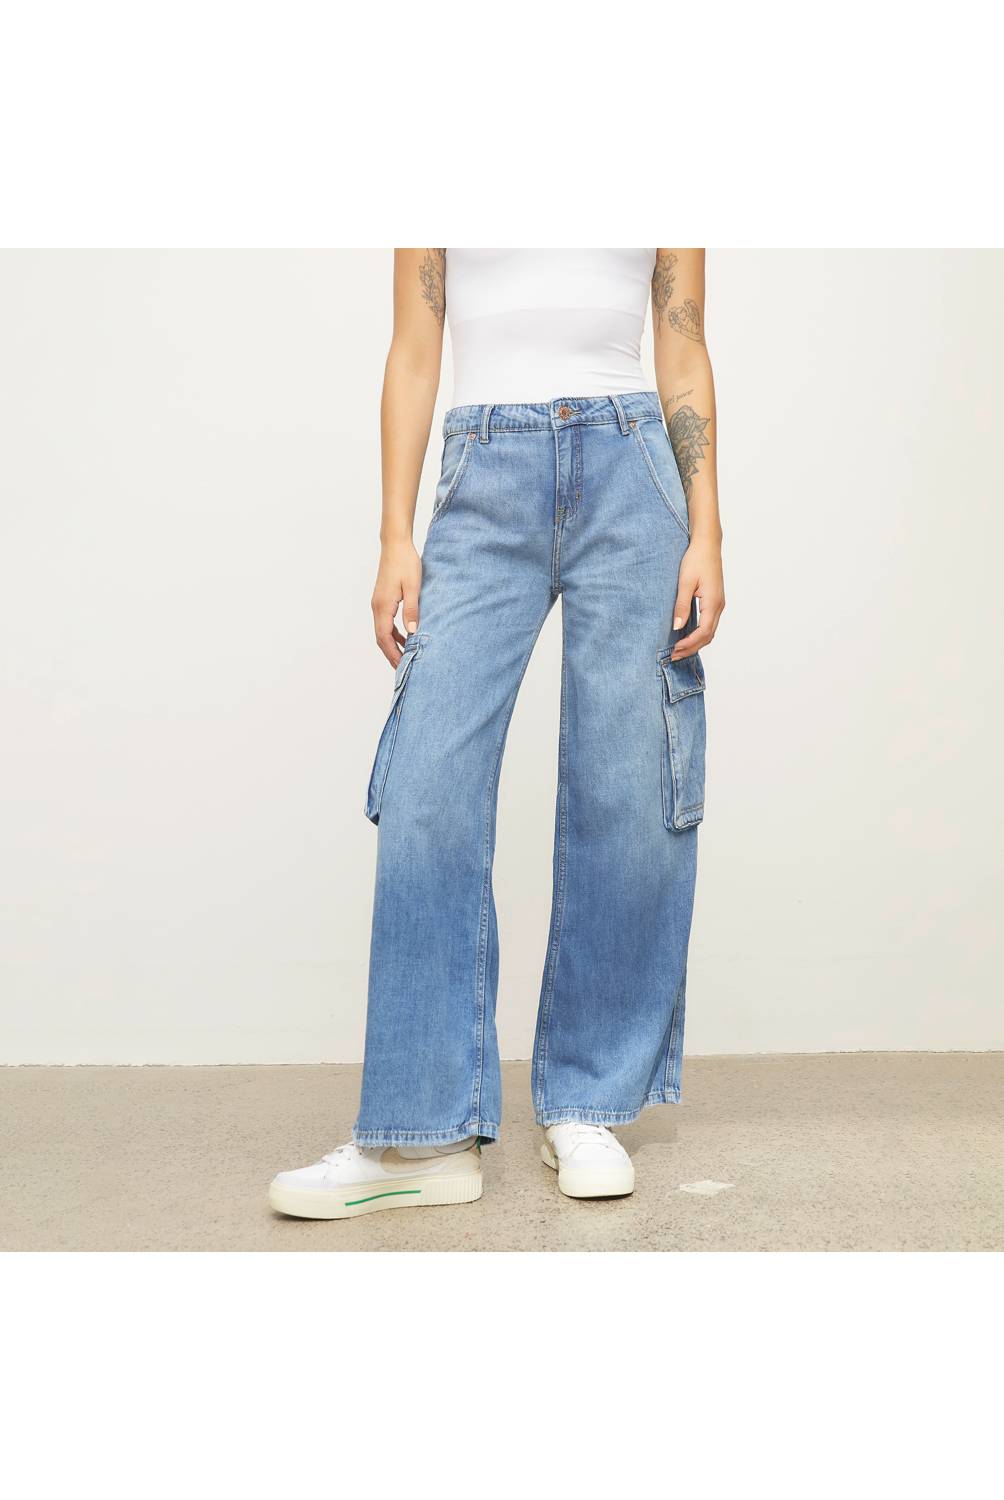 AMERICANINO Americanino Jeans Cargo Tiro Medio Mujer